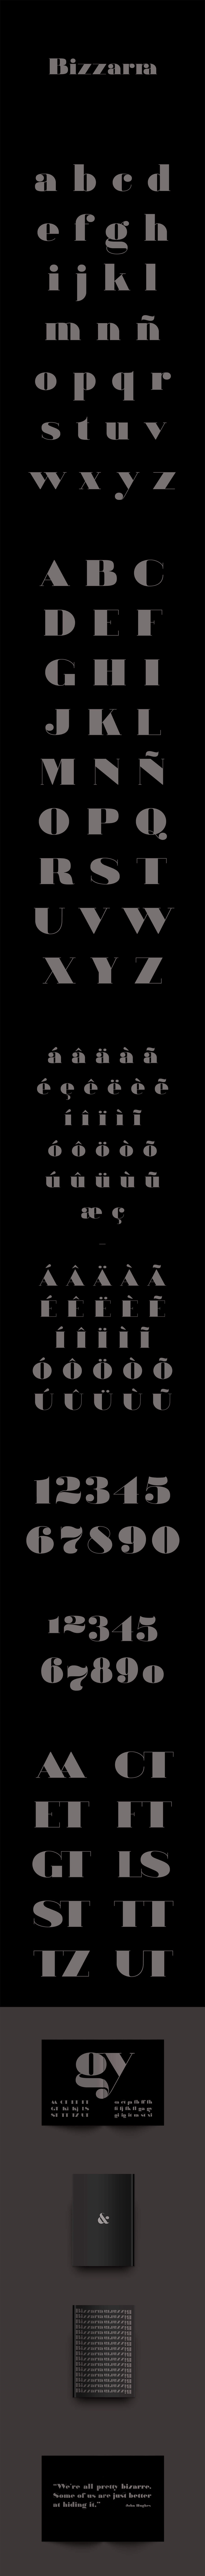 Free Bizzarra Serif Font